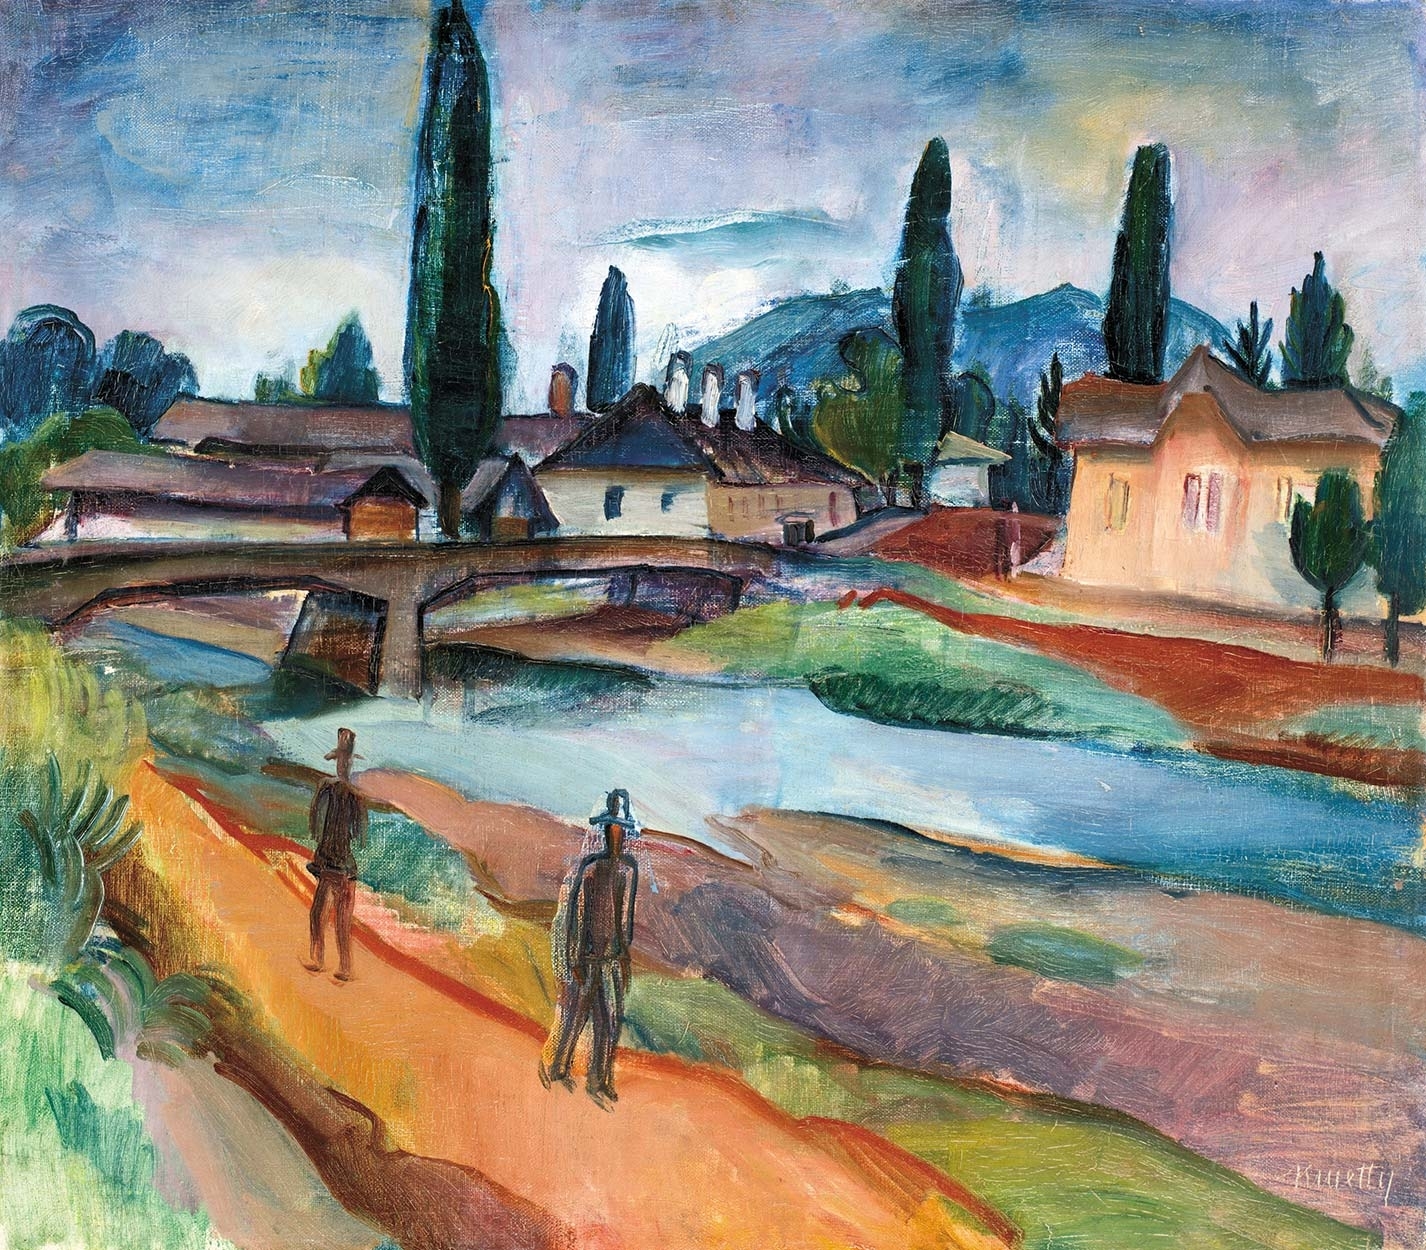 Kmetty János (1889-1975) Wald at the riverside (Baia Mare), ca. 1930